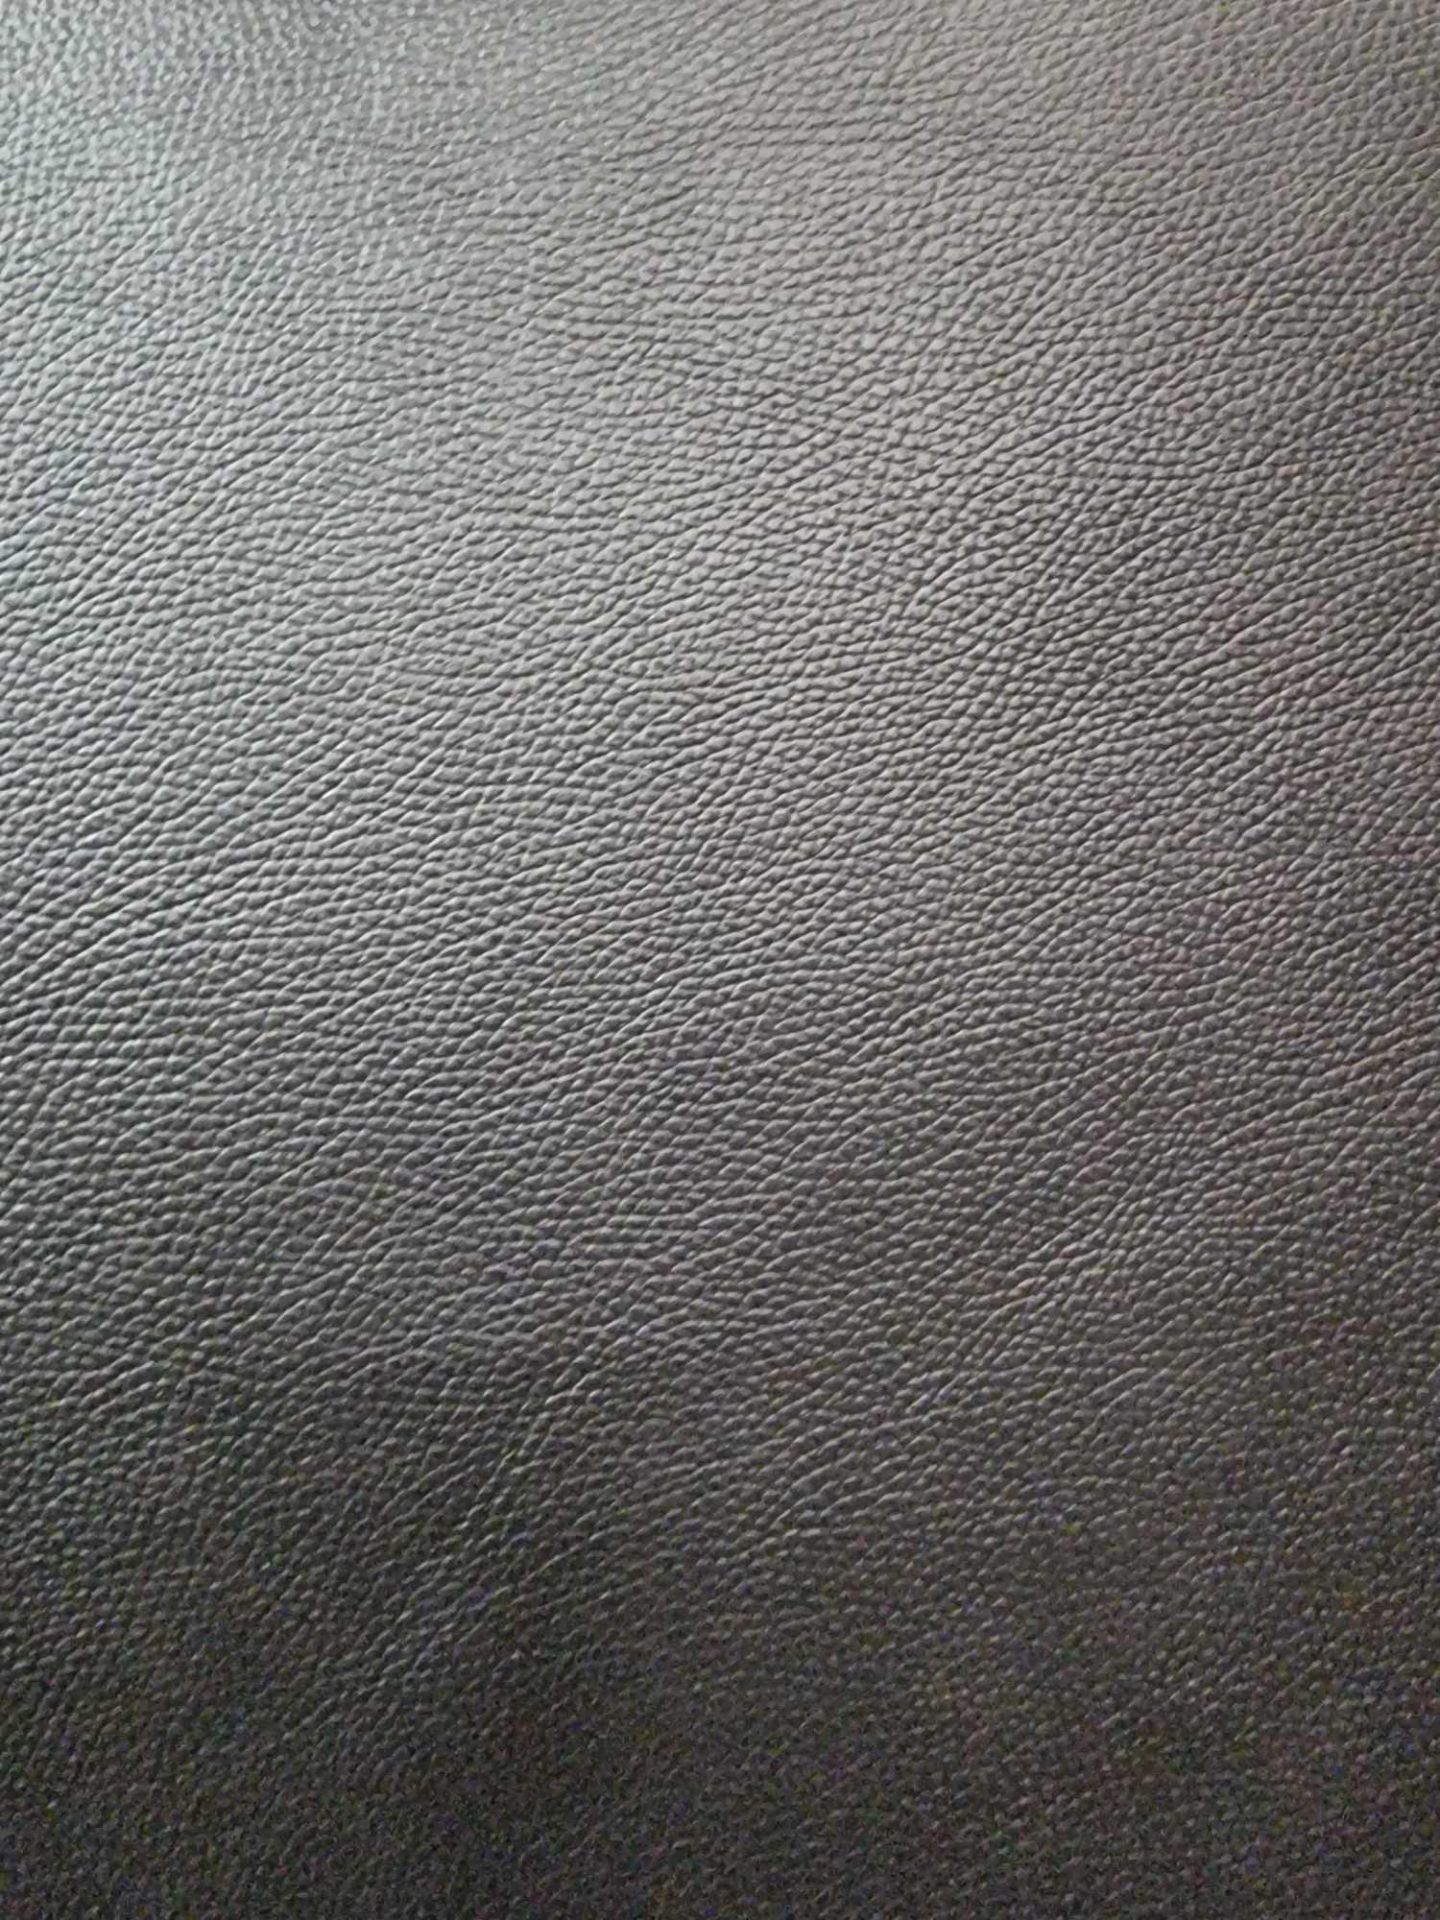 Duresta Midnight Silver Leather Hide approximately 4 37M2 2 3 x 1 9cm ( Hide No,224) - Bild 2 aus 3